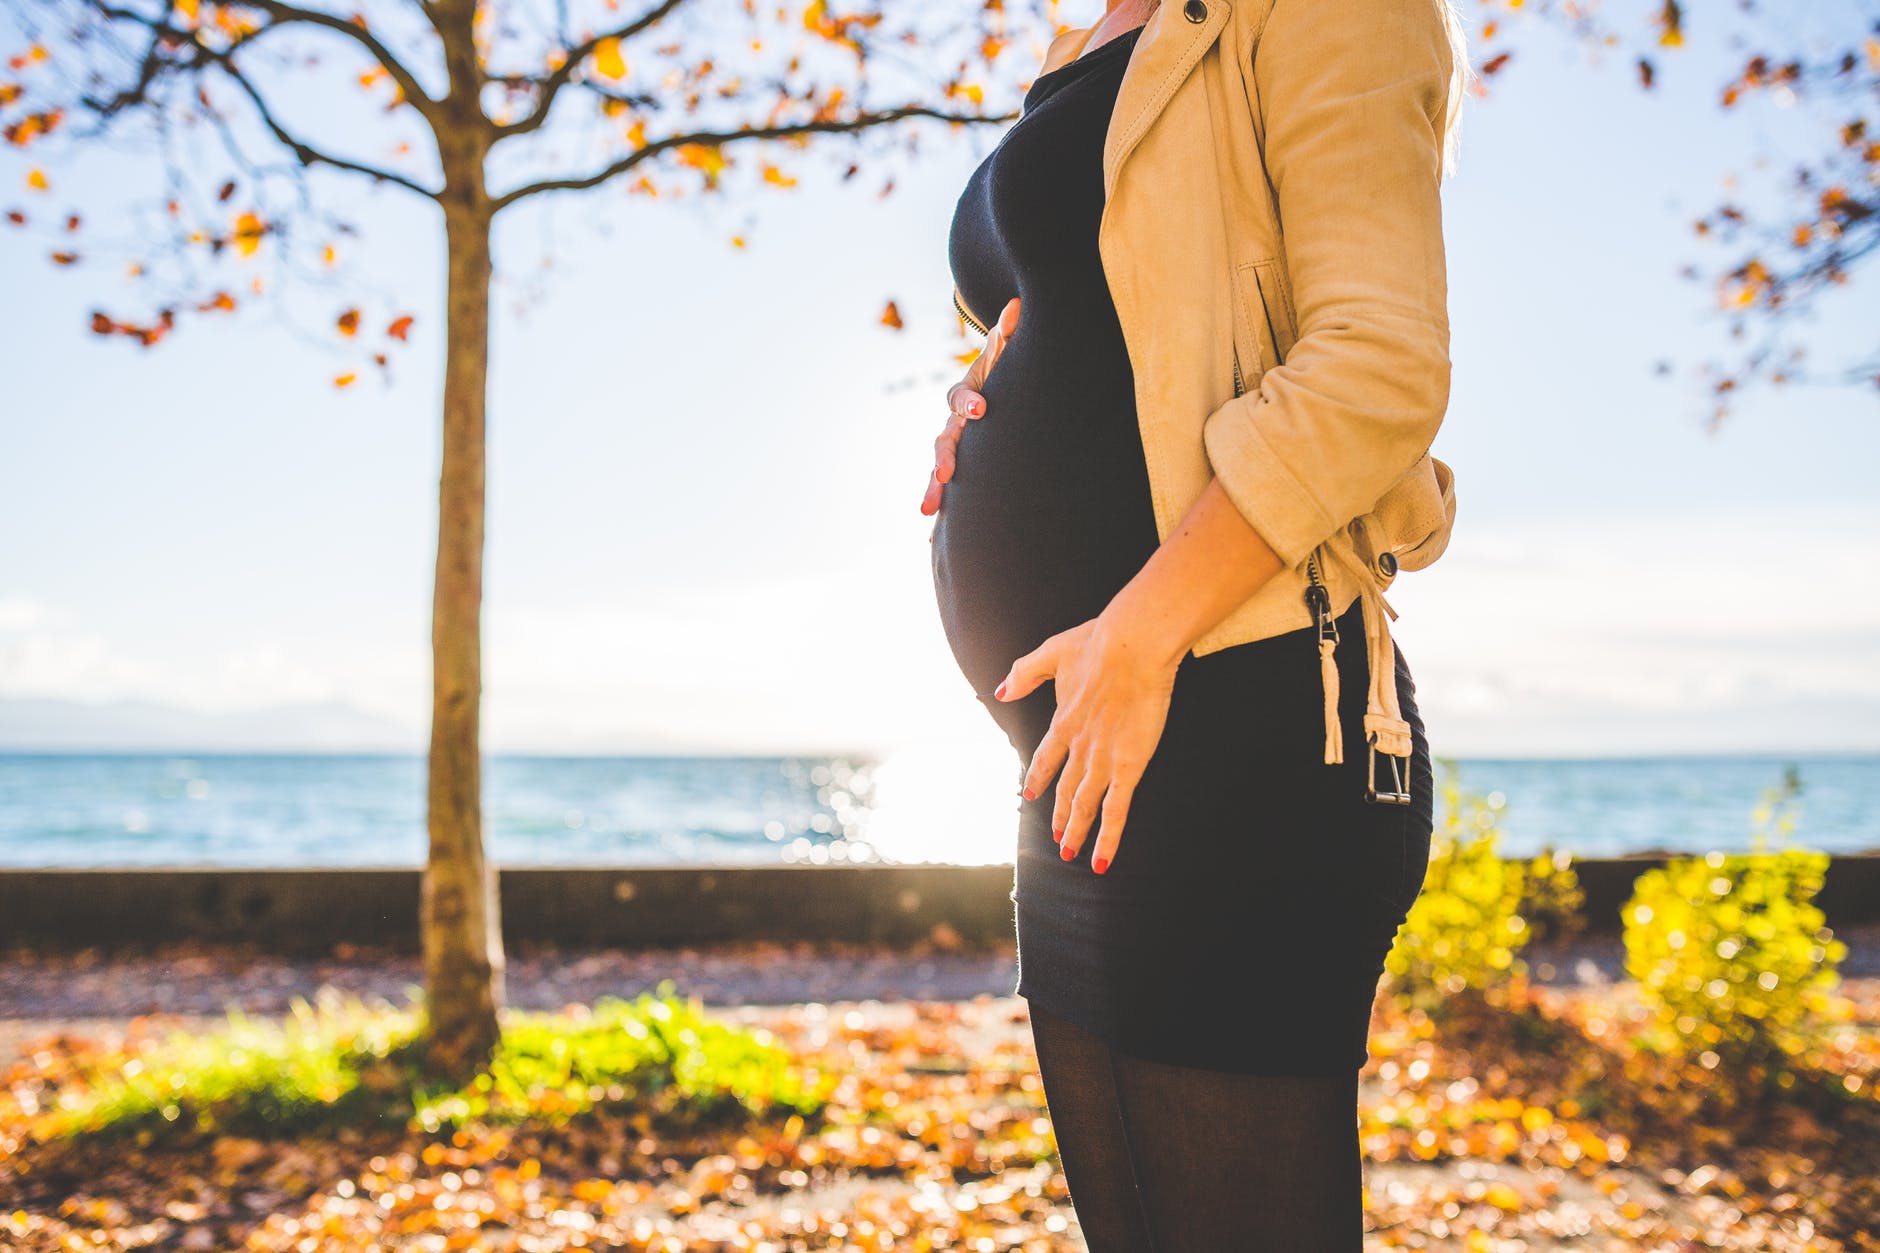 ألم Cruralgia والحمل: كيفية إدارة النوبات؟ (تمارين)